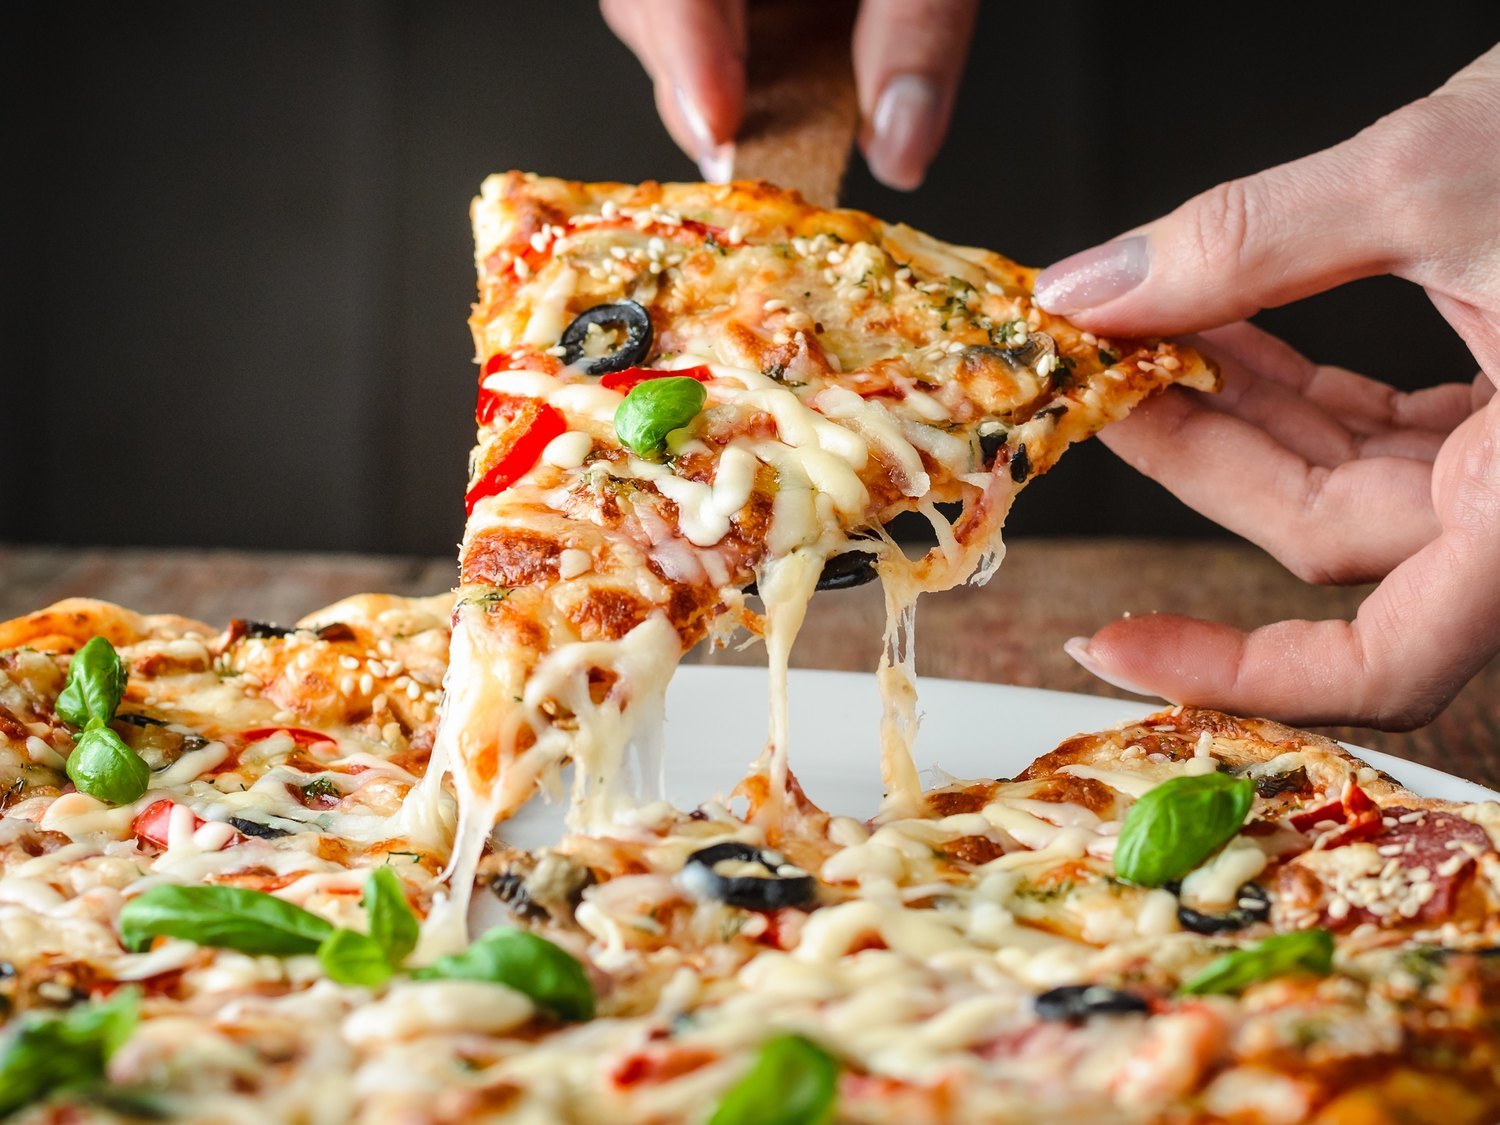 Alerta alimentaria: retiran de la venta estas populares pizzas del supermercado por listeriosis